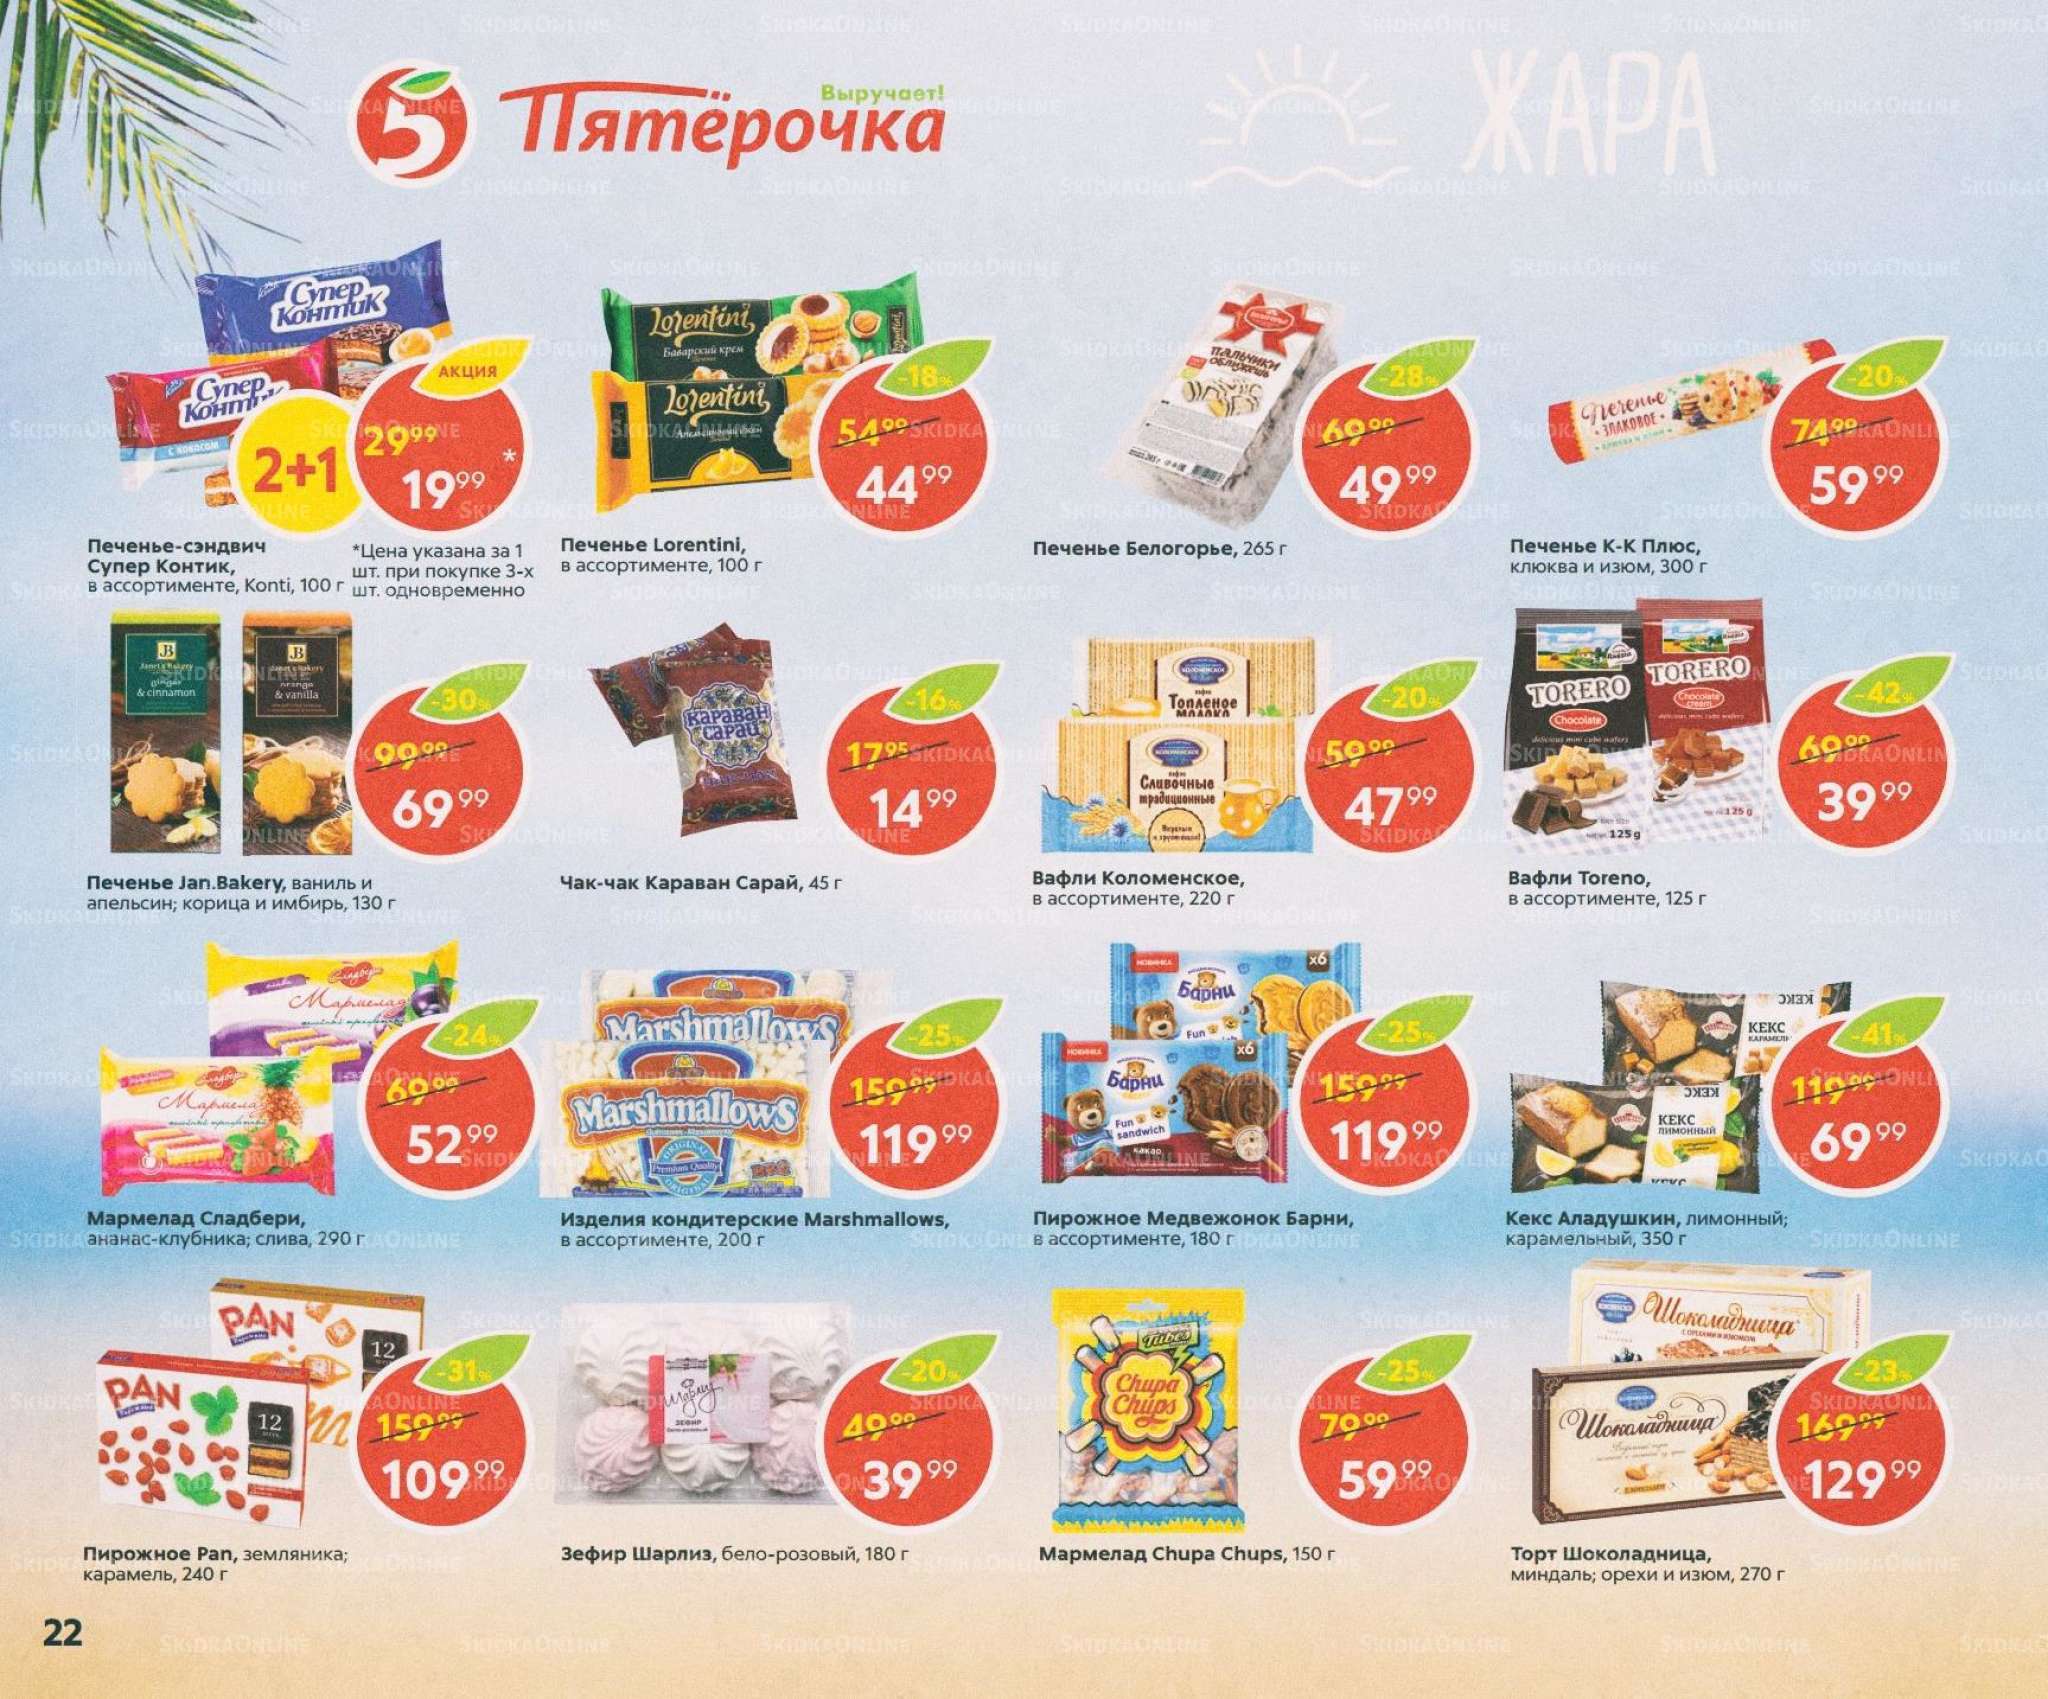 Акции в магазинах Пятерочка с 11 июля по 8 августа2019 г.